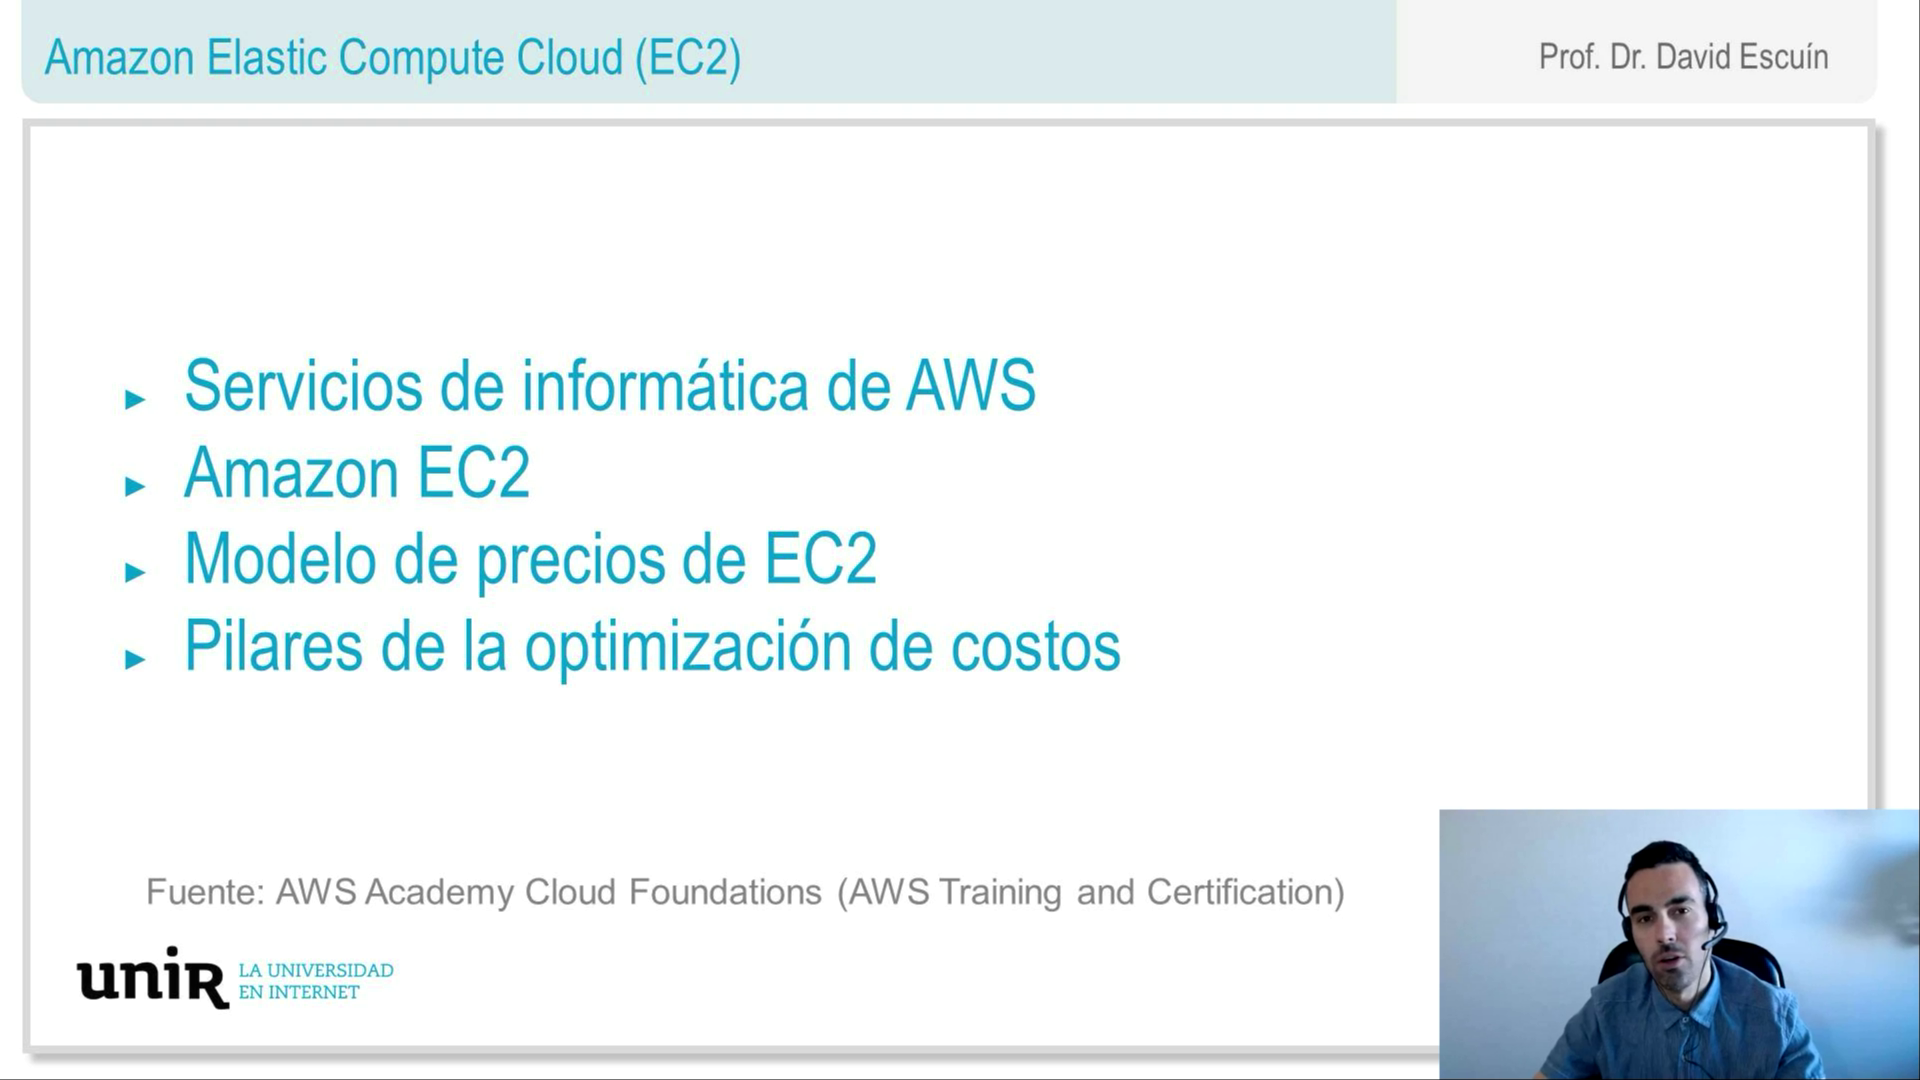 Amazon-Elastic-Compute-Cloud-EC2